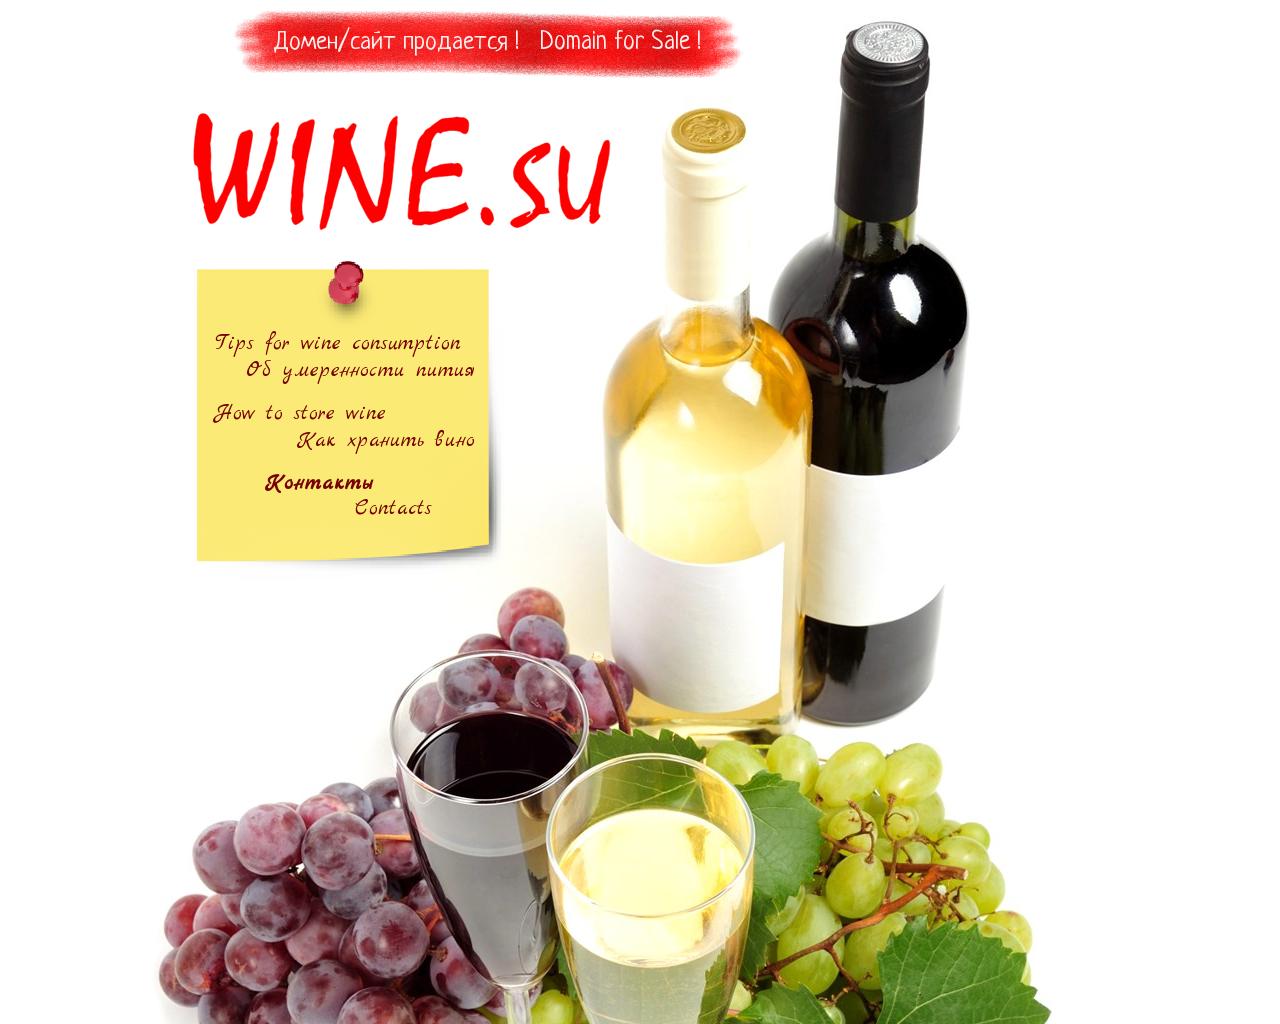 Вино мовементо. Лучшие сайты про вино. Мега Спилео вино. Ворсао вино. Сайт про вино